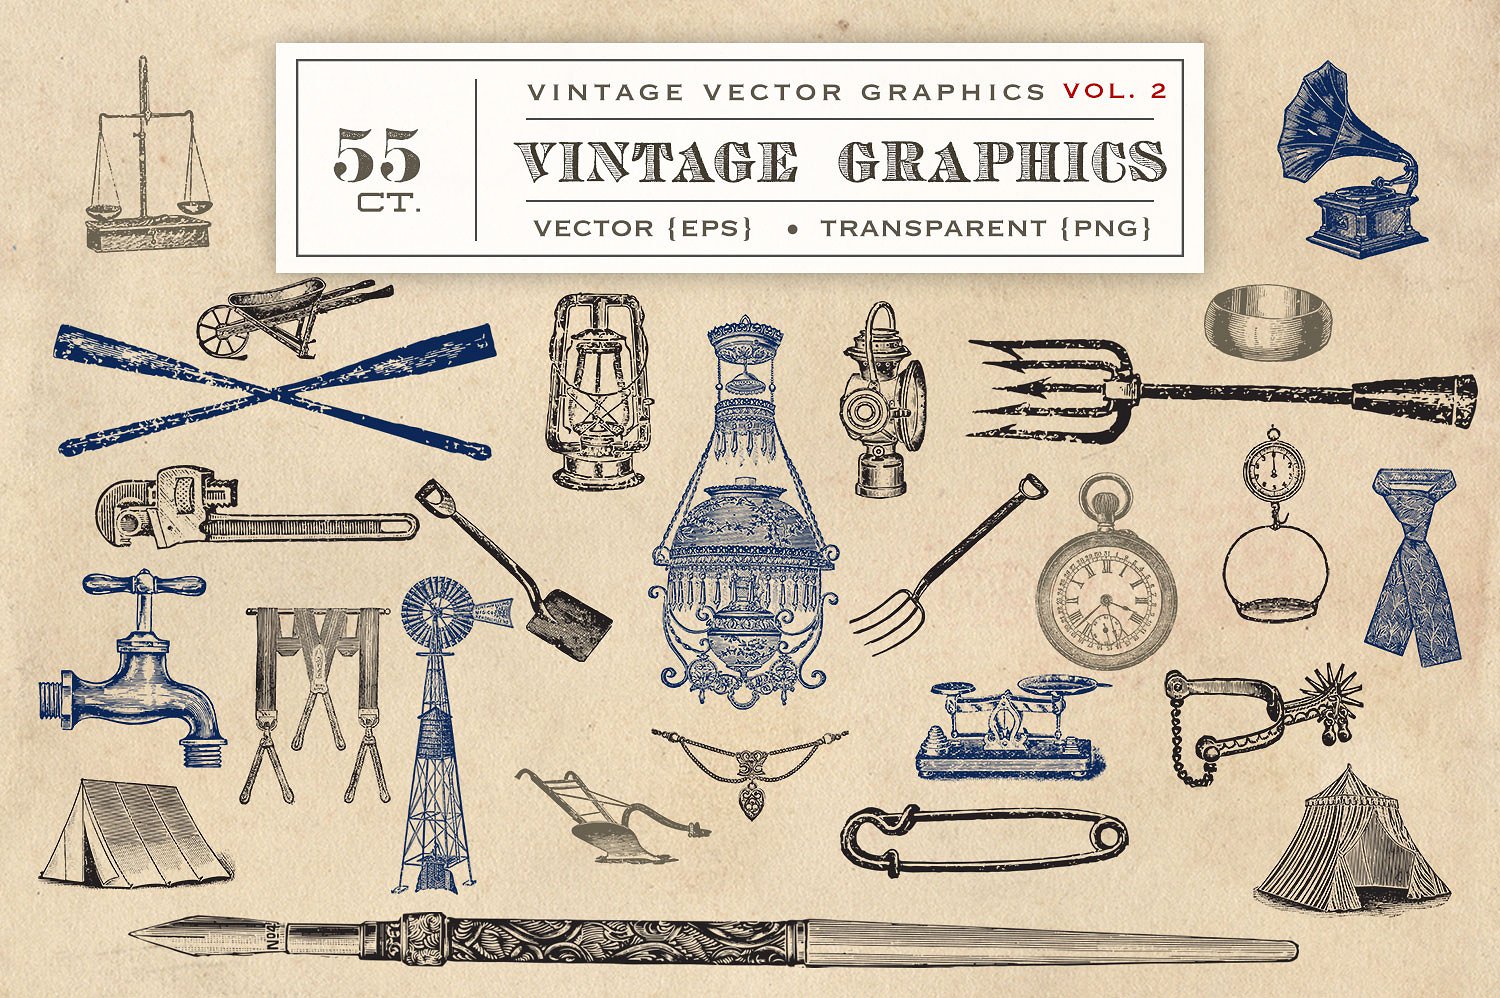 复古矢量设计素材55 Vintage Vectors Gra